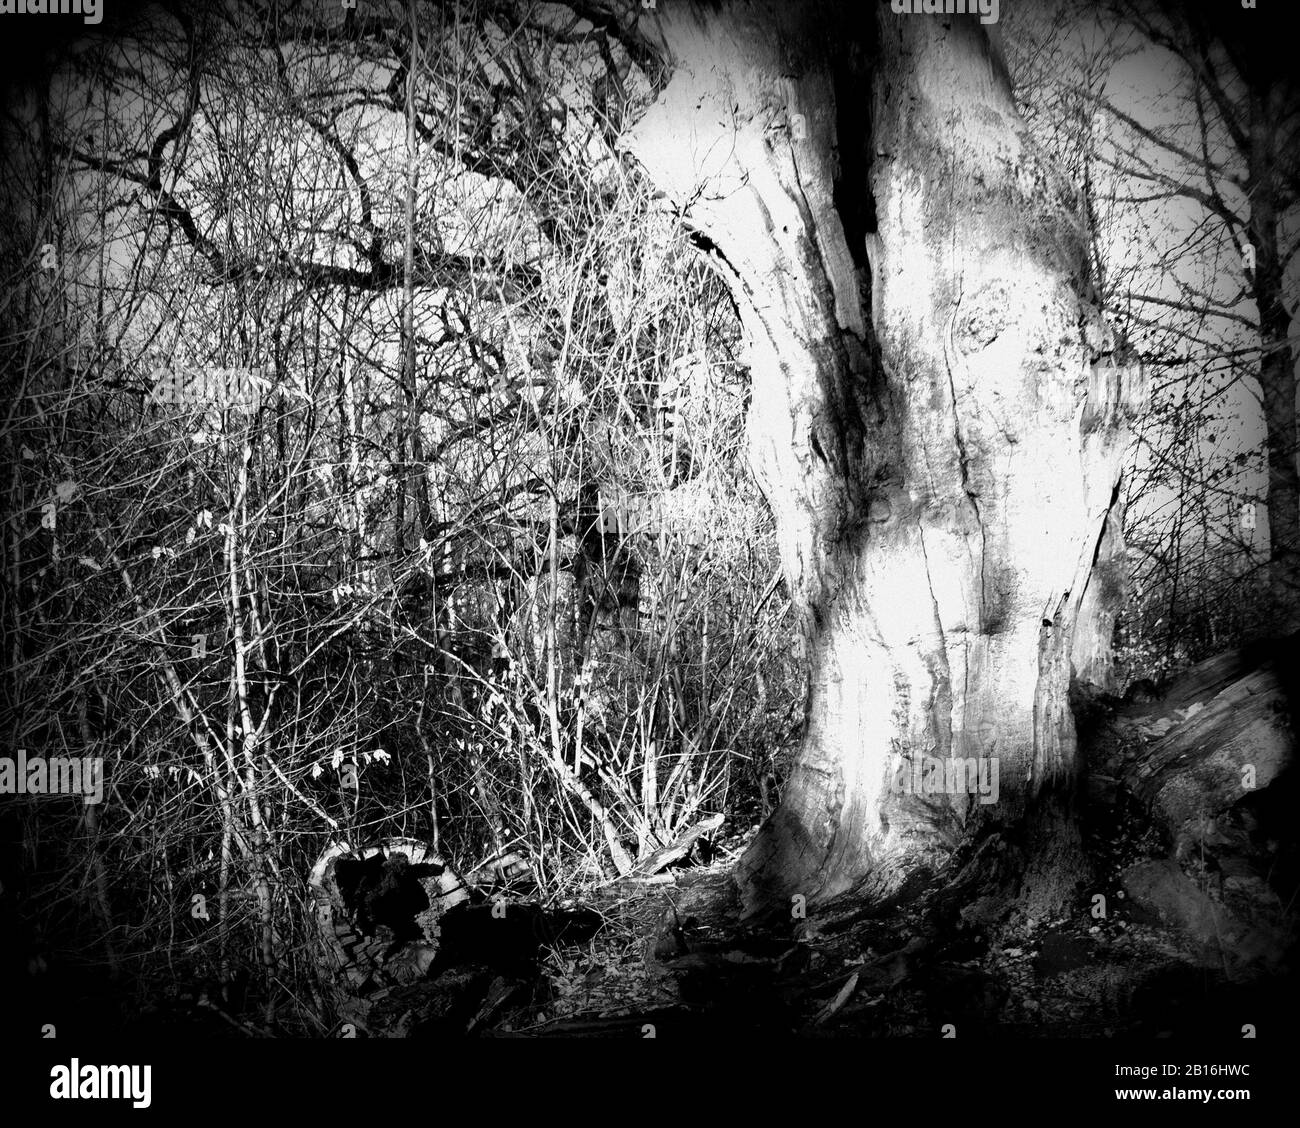 Morto e parzialmente scavato nella foresta primeval di Sababurg, Lomography Holga Foto Stock